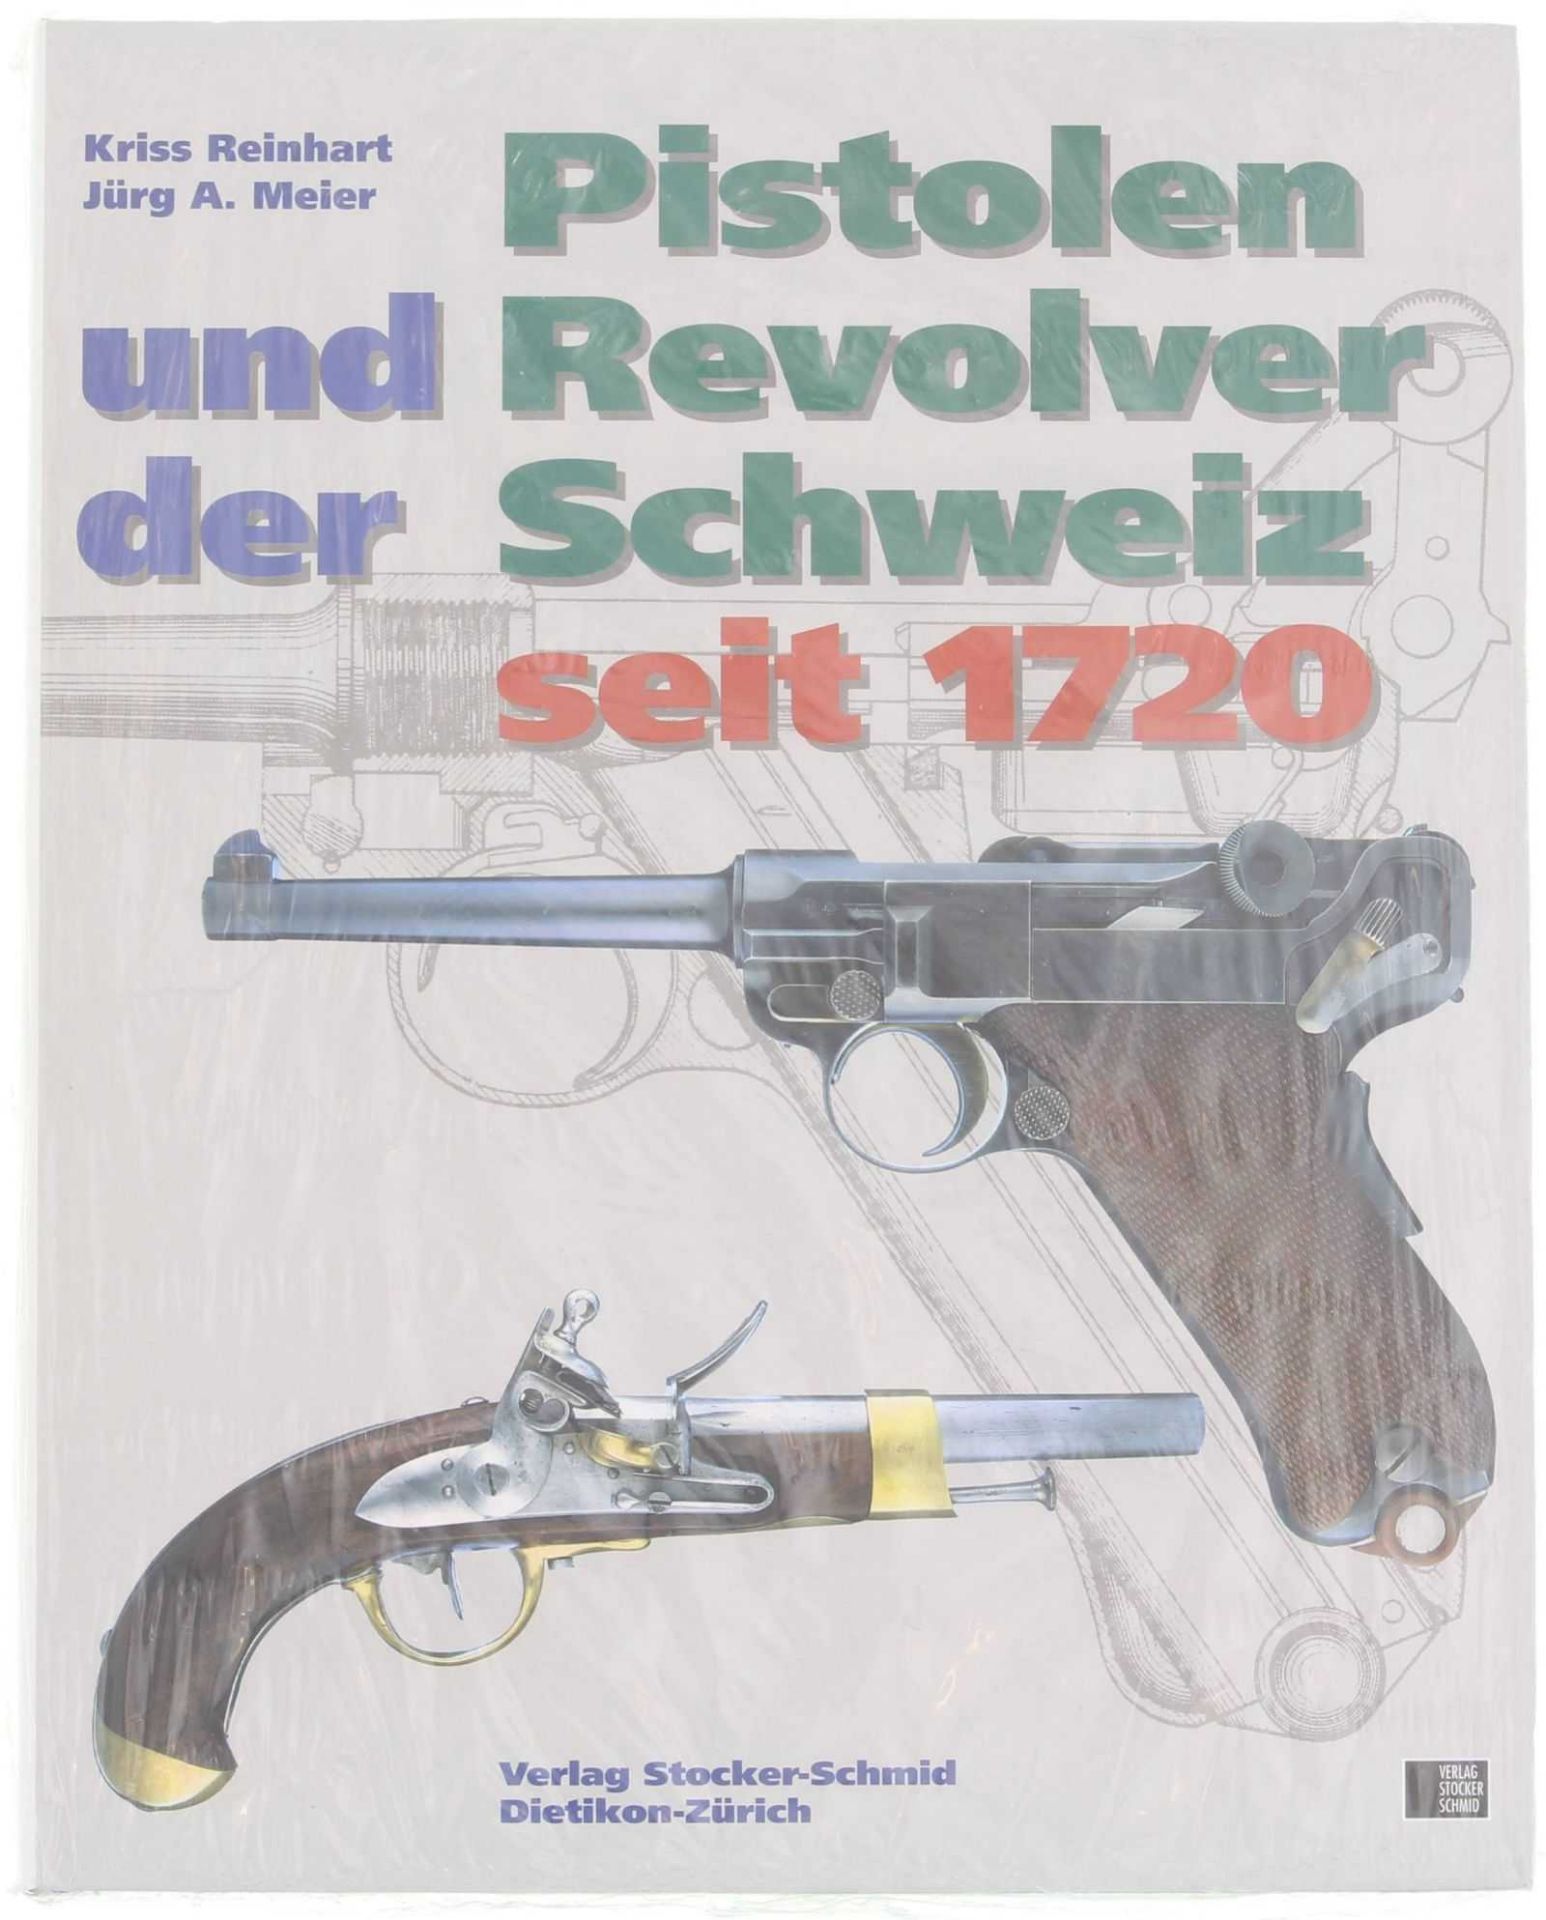 Buch: Pistolen und Revolver der Schweiz seit 1720, von Kriss Reinhart und Jörg A. Meier. Ergänzte